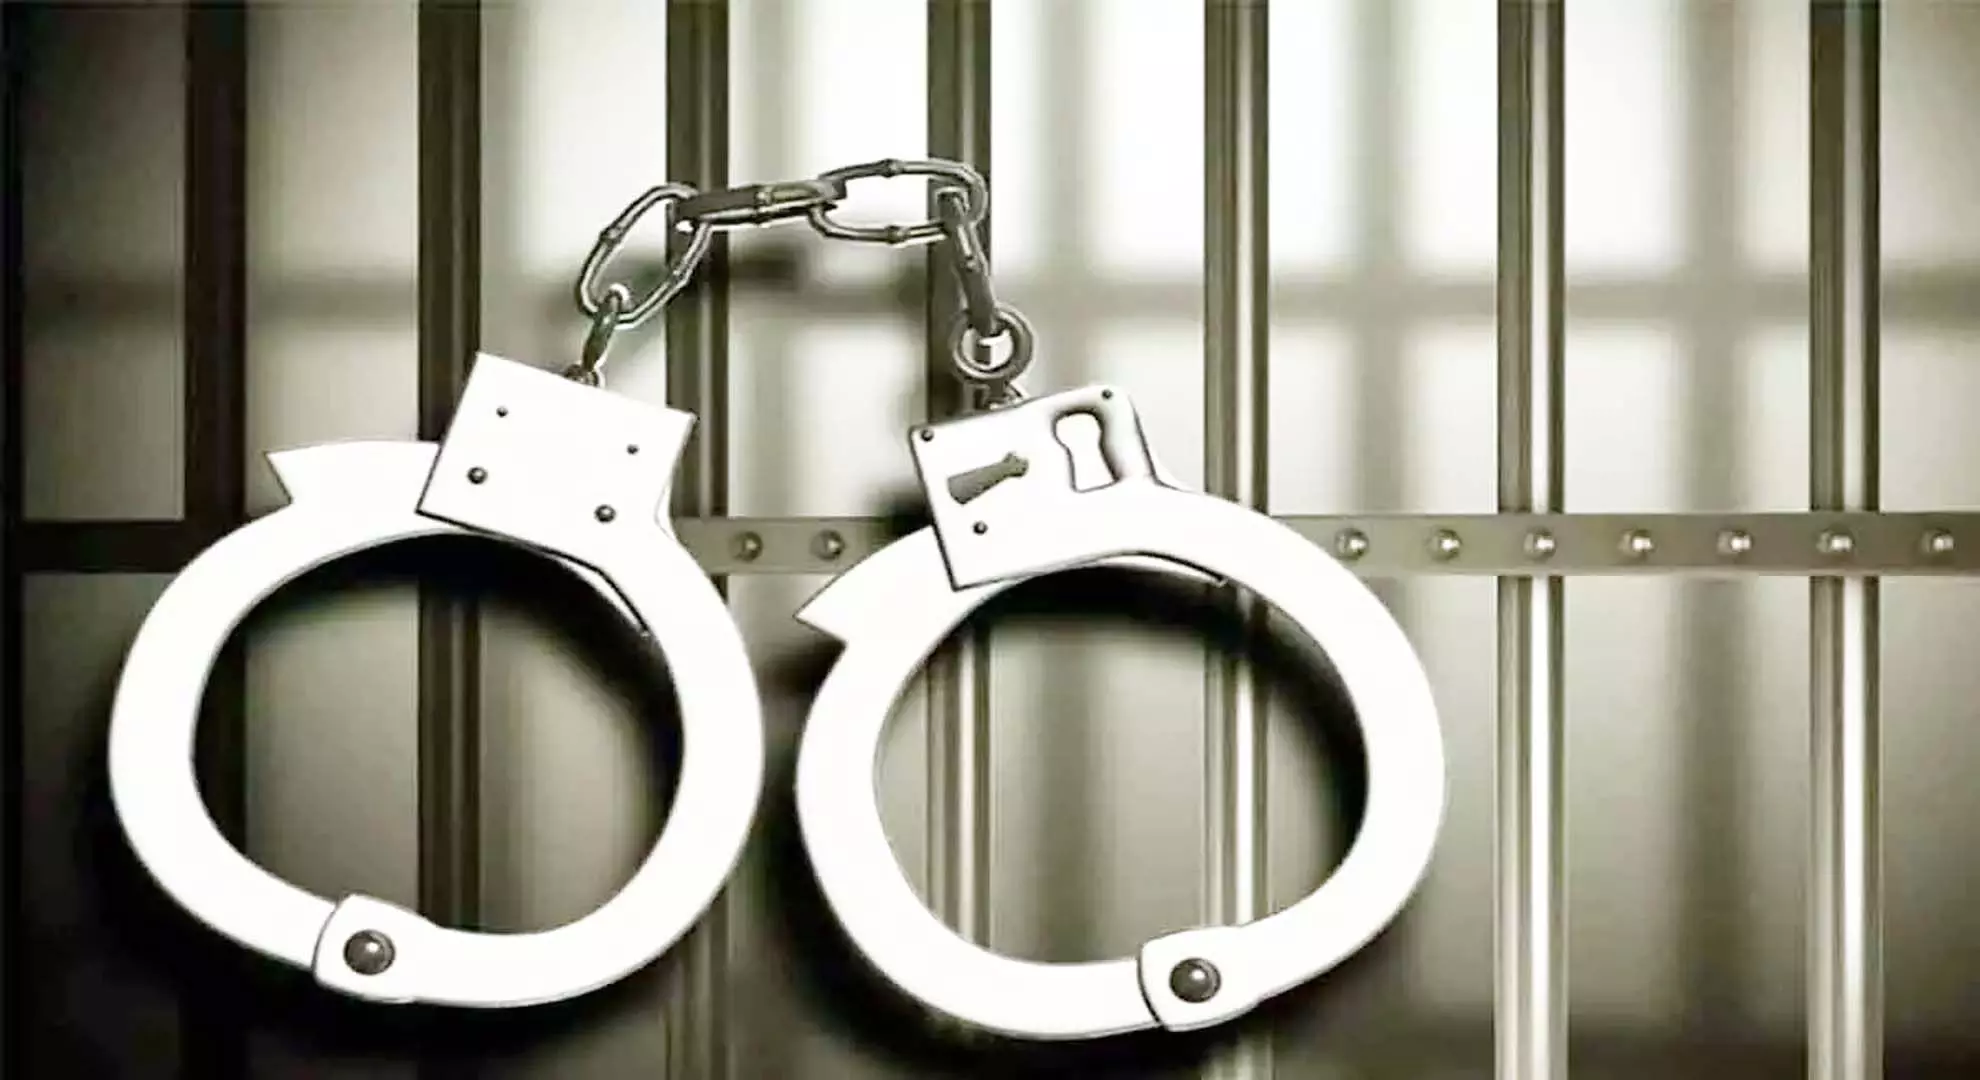 गाचीबोवली में अवैध जुआ के आरोप में लॉज पर छापा, चार गिरफ्तार